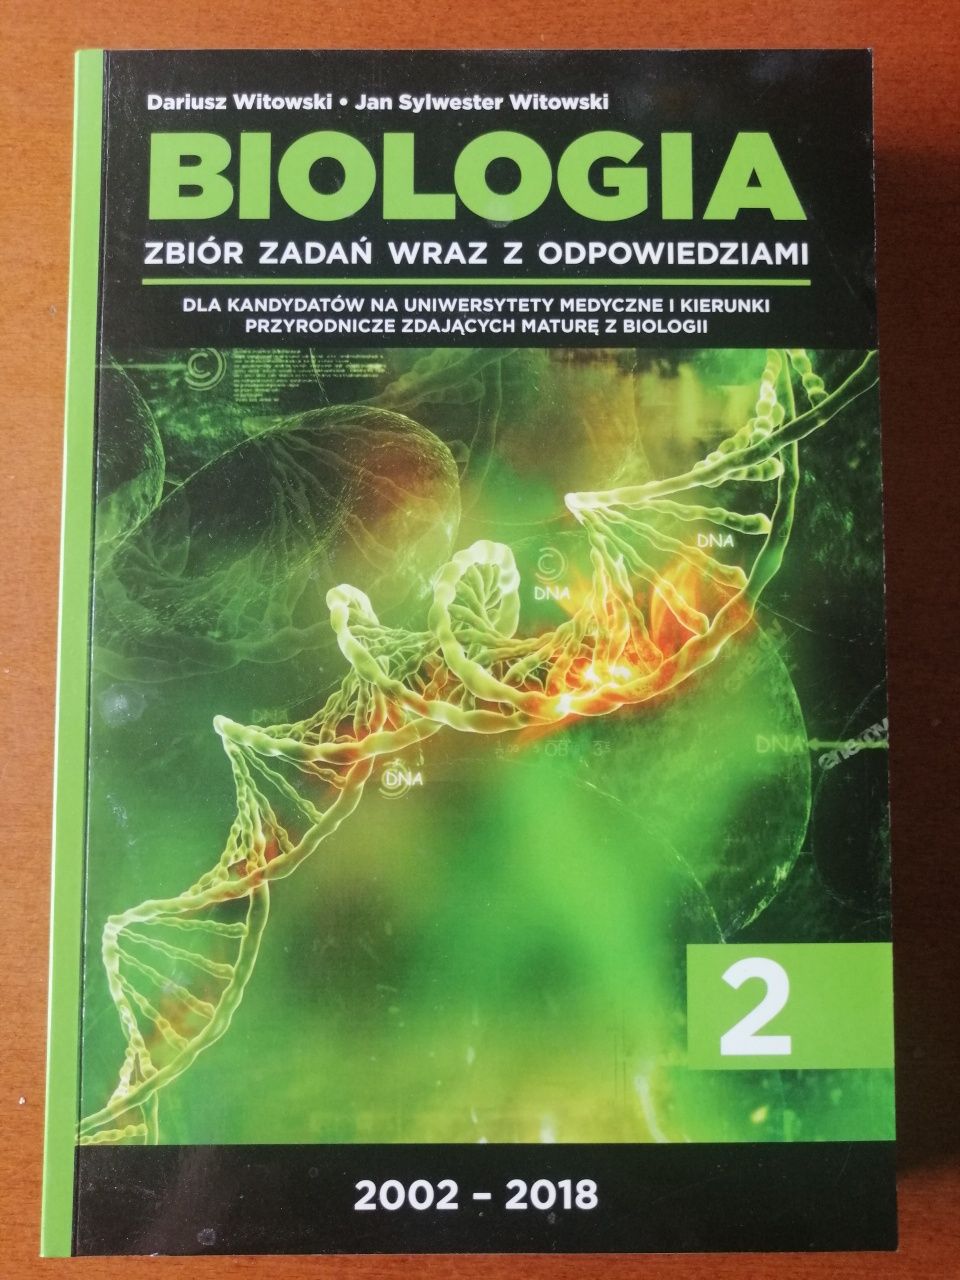 WITOWSKI Biologia cz. 2 (2018)